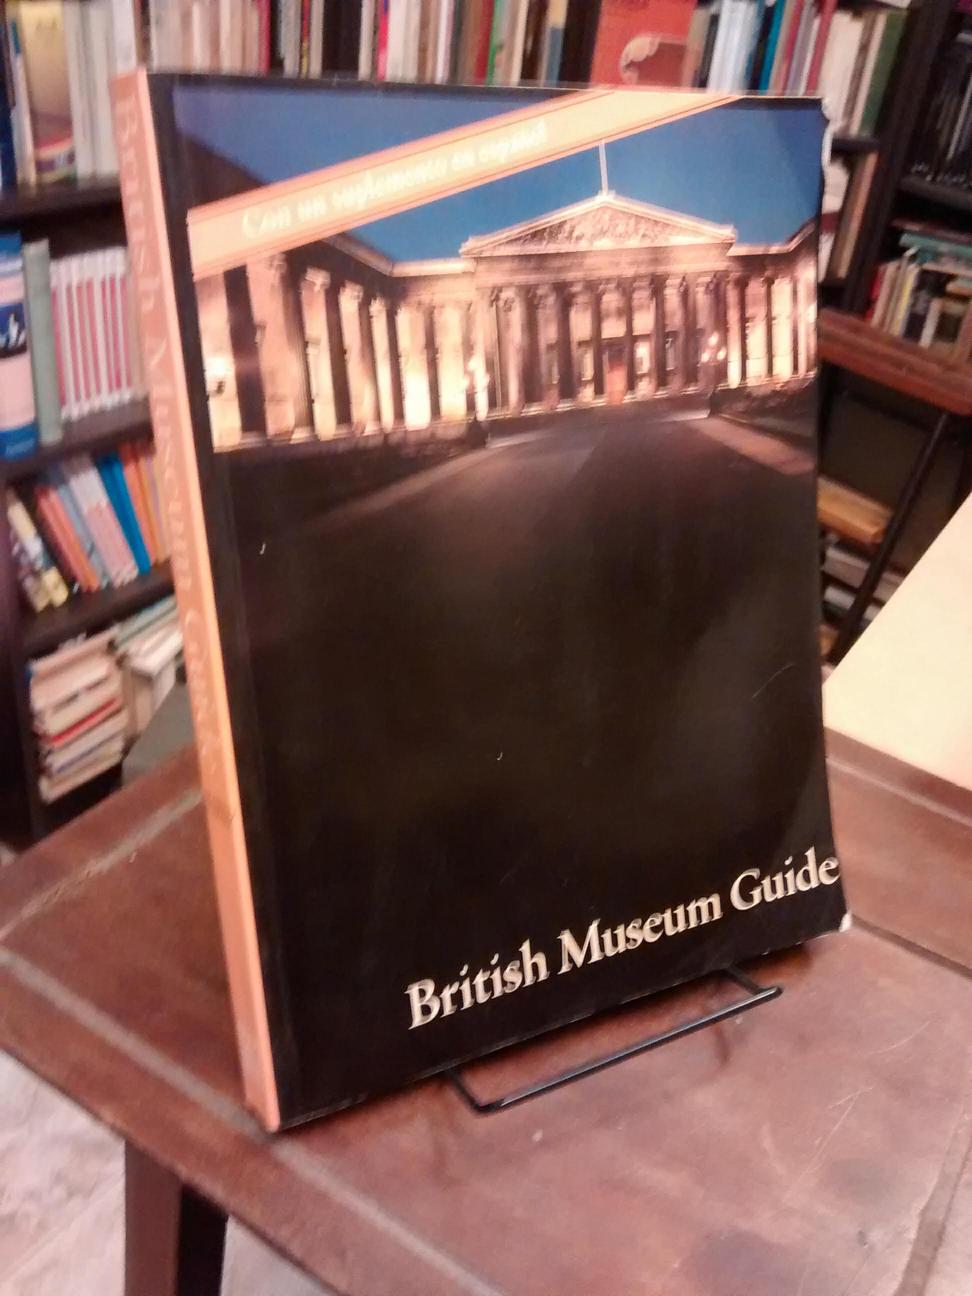 British Museum Guide - 